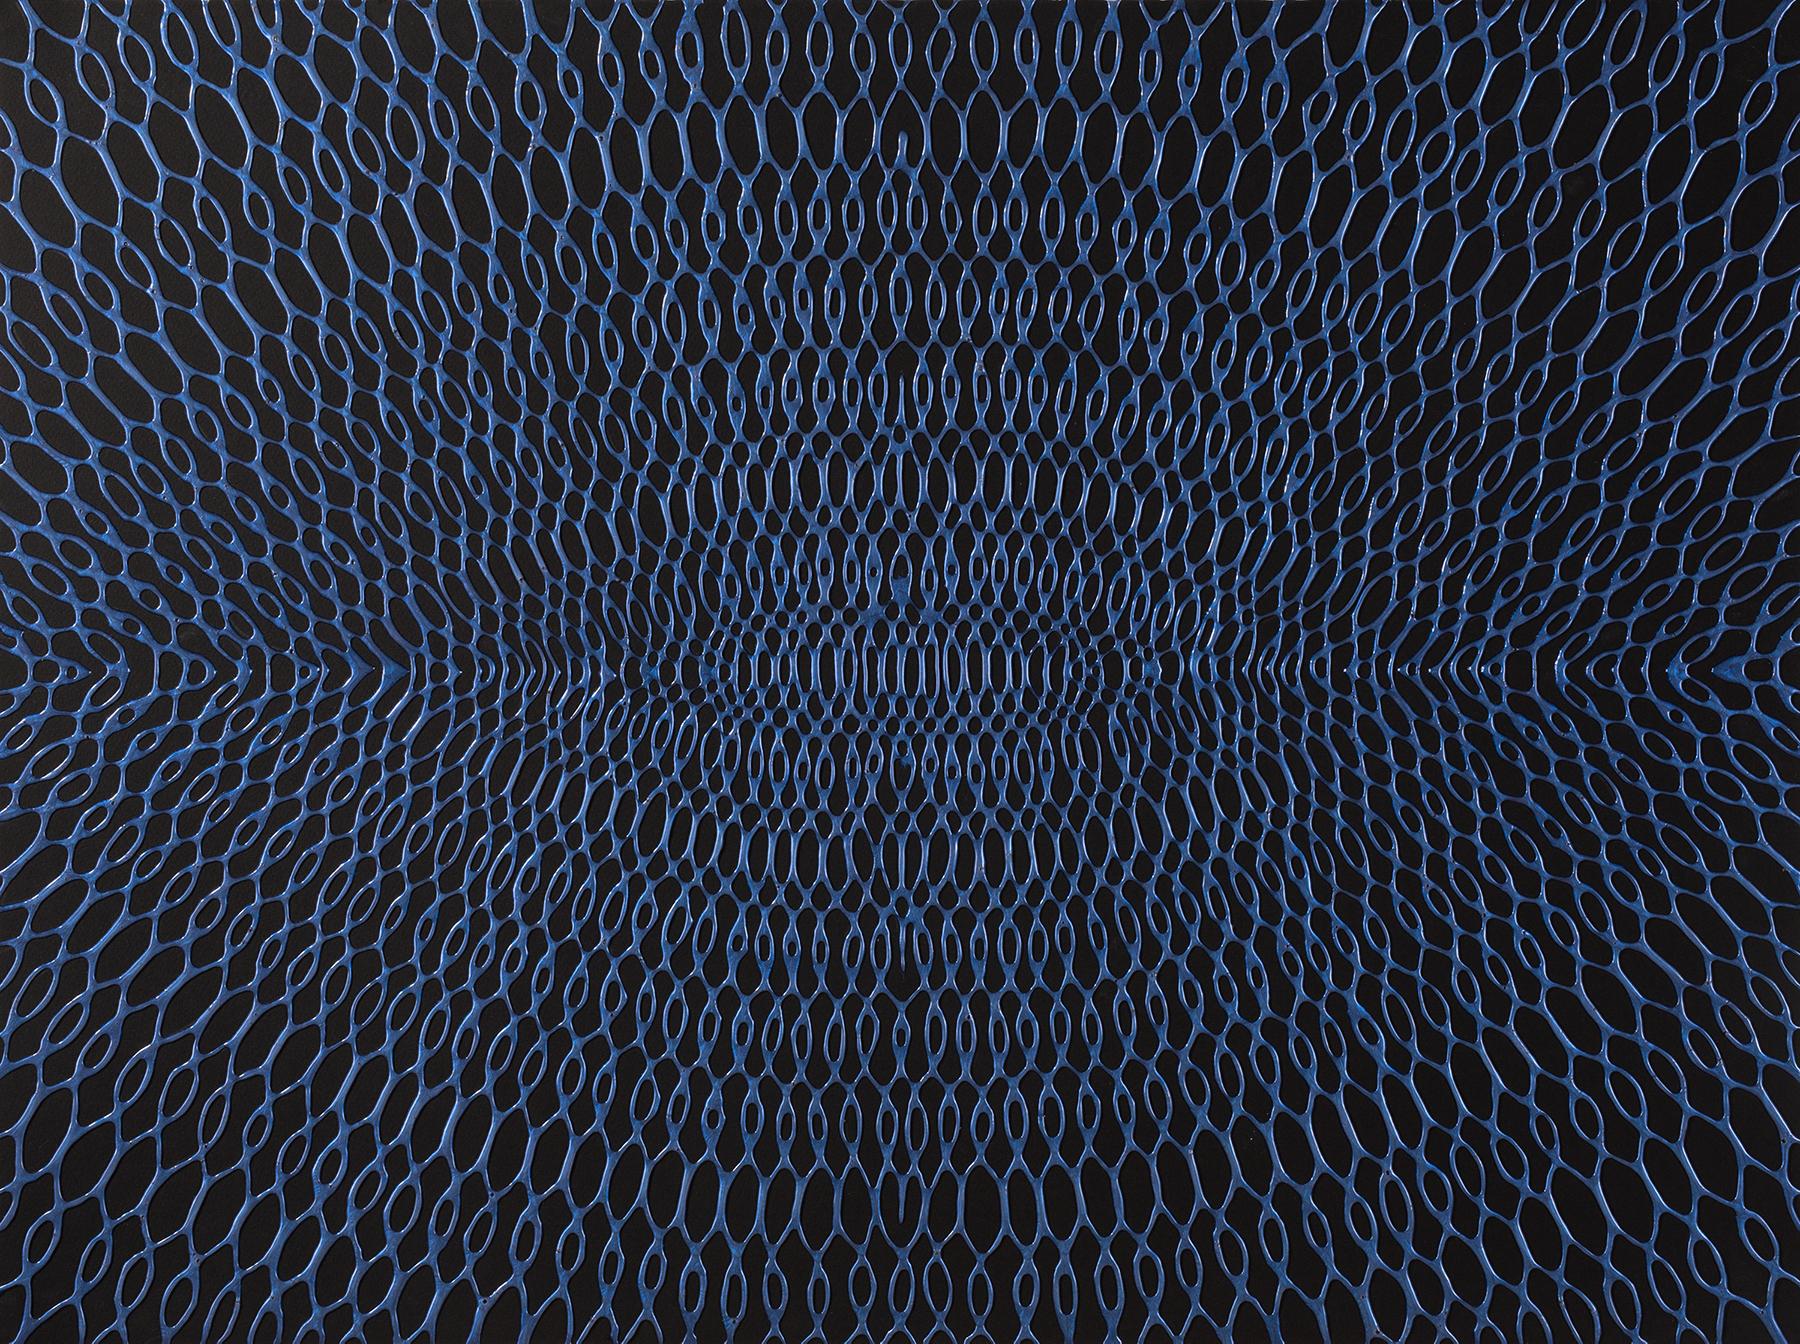 Daniel Hill,  Untitled-3 2015, acrylic, 22 x 30 inches